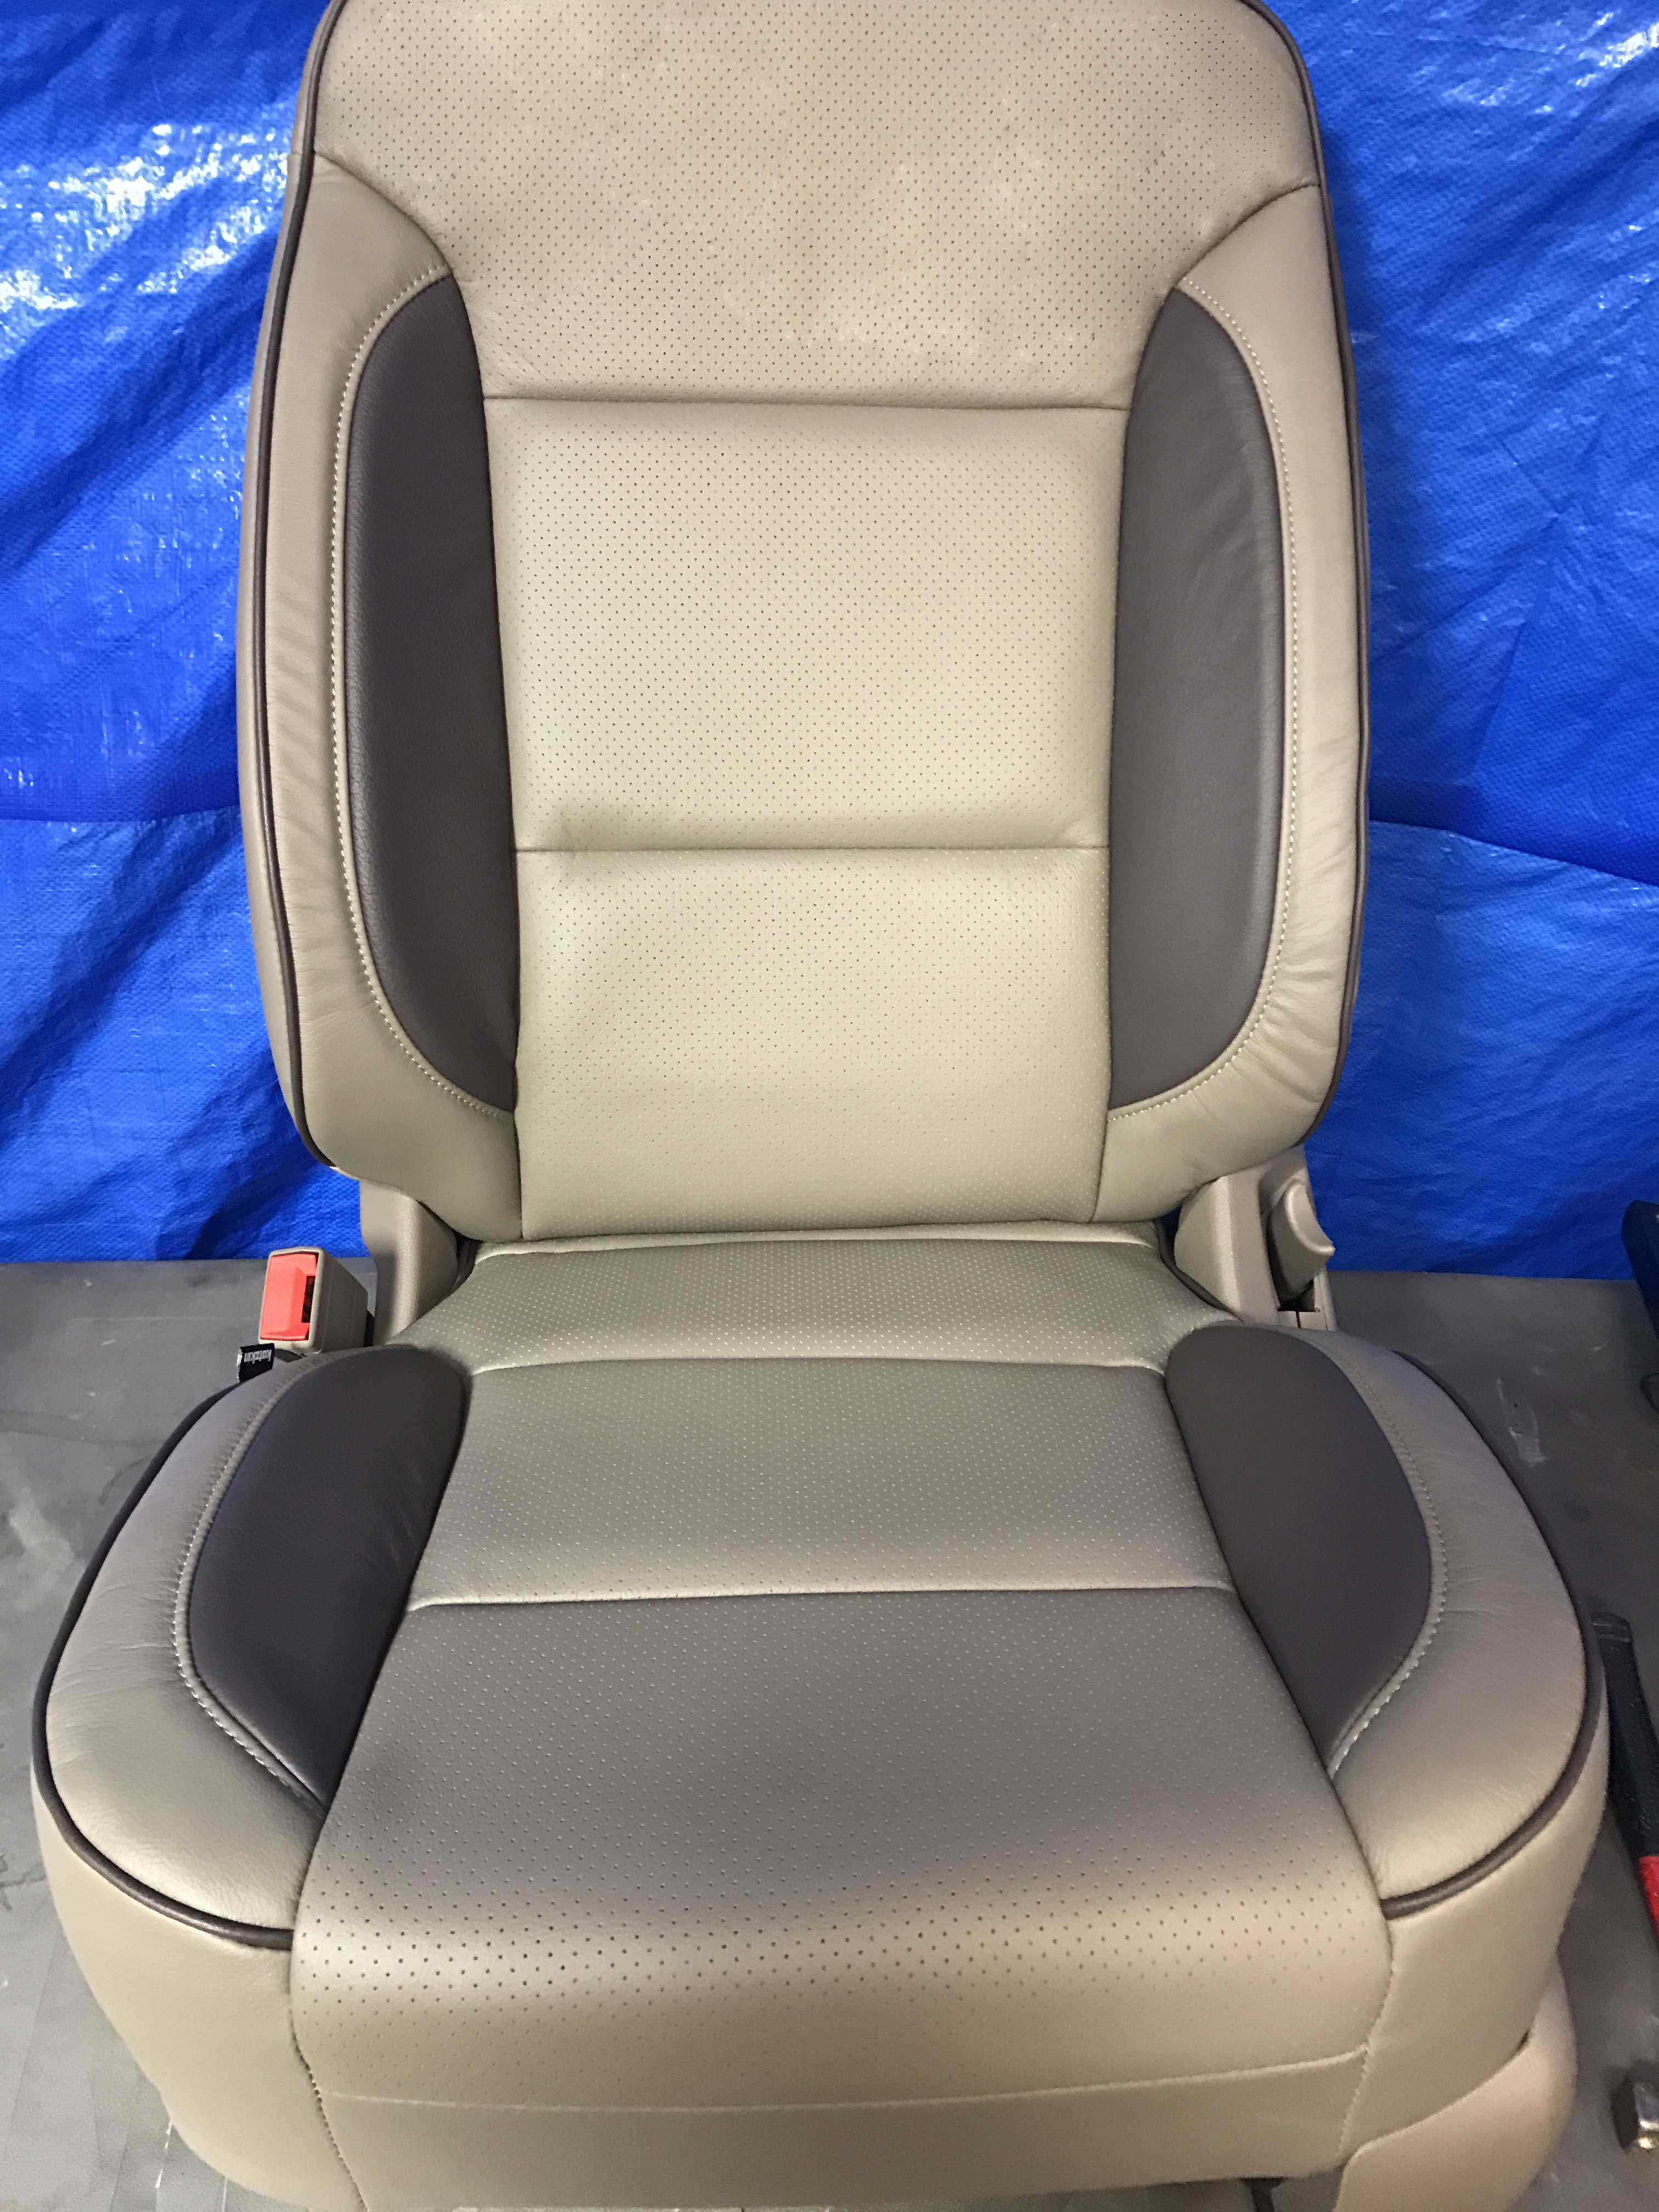 2016 2017 Chevrolet Silverado Lt Crew Cab Katzkin Leather Cocoa Dune Bristol Ebay